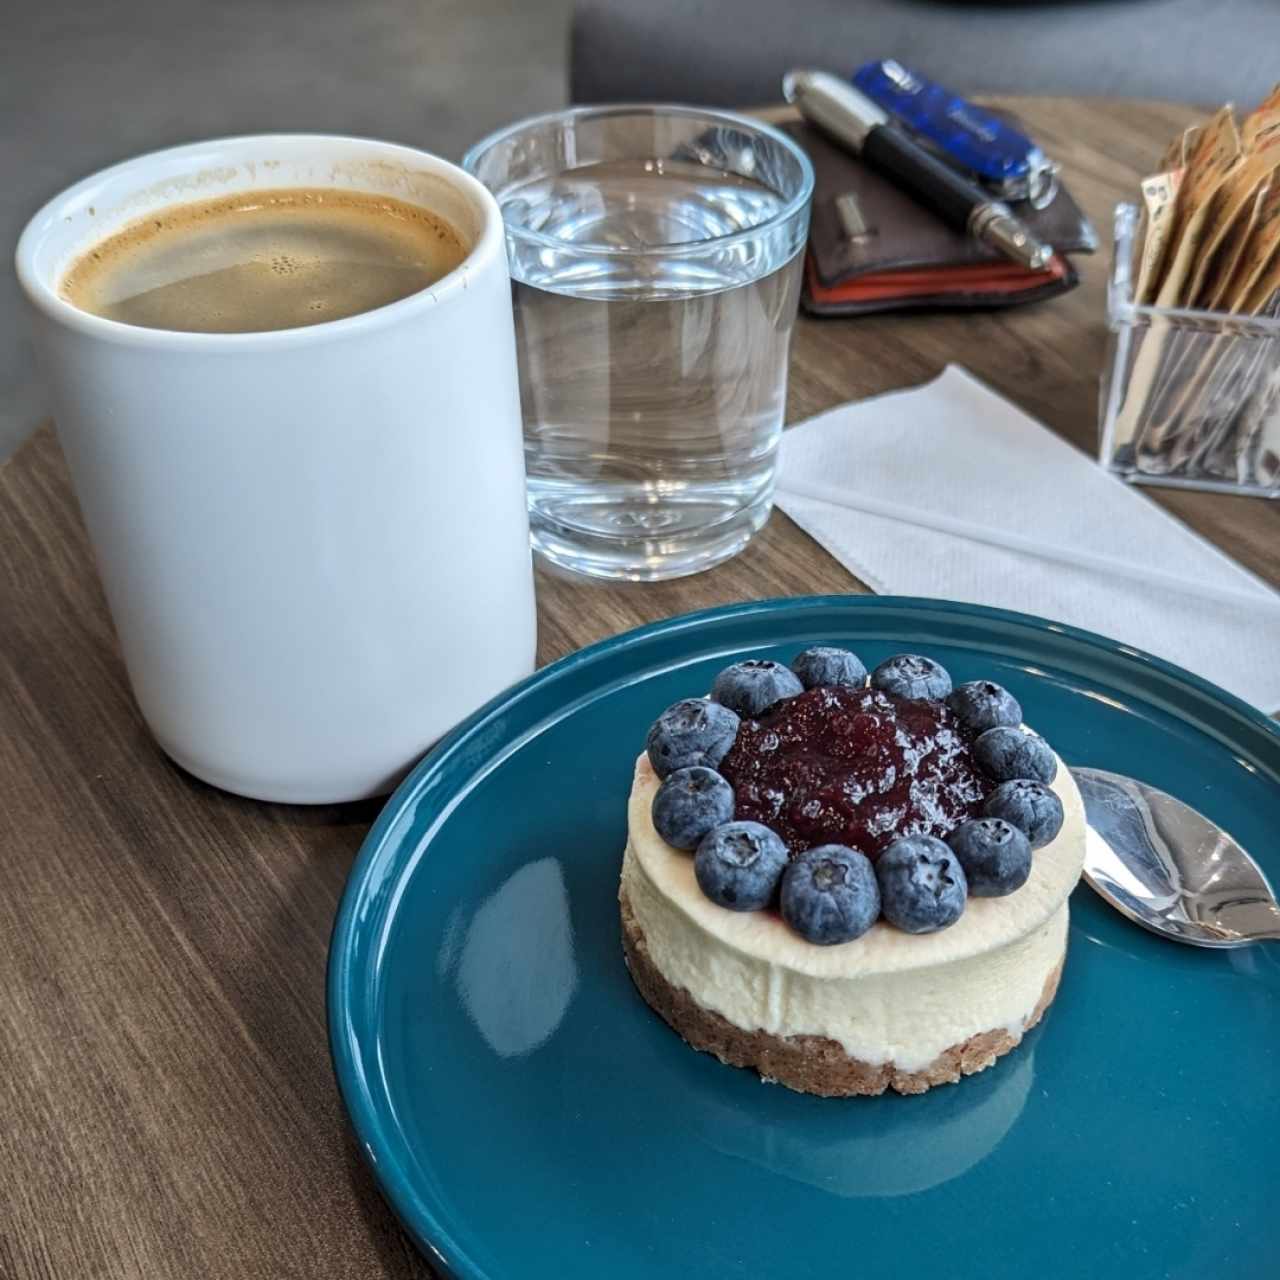 Cheesecake de Blueberry + Café americano